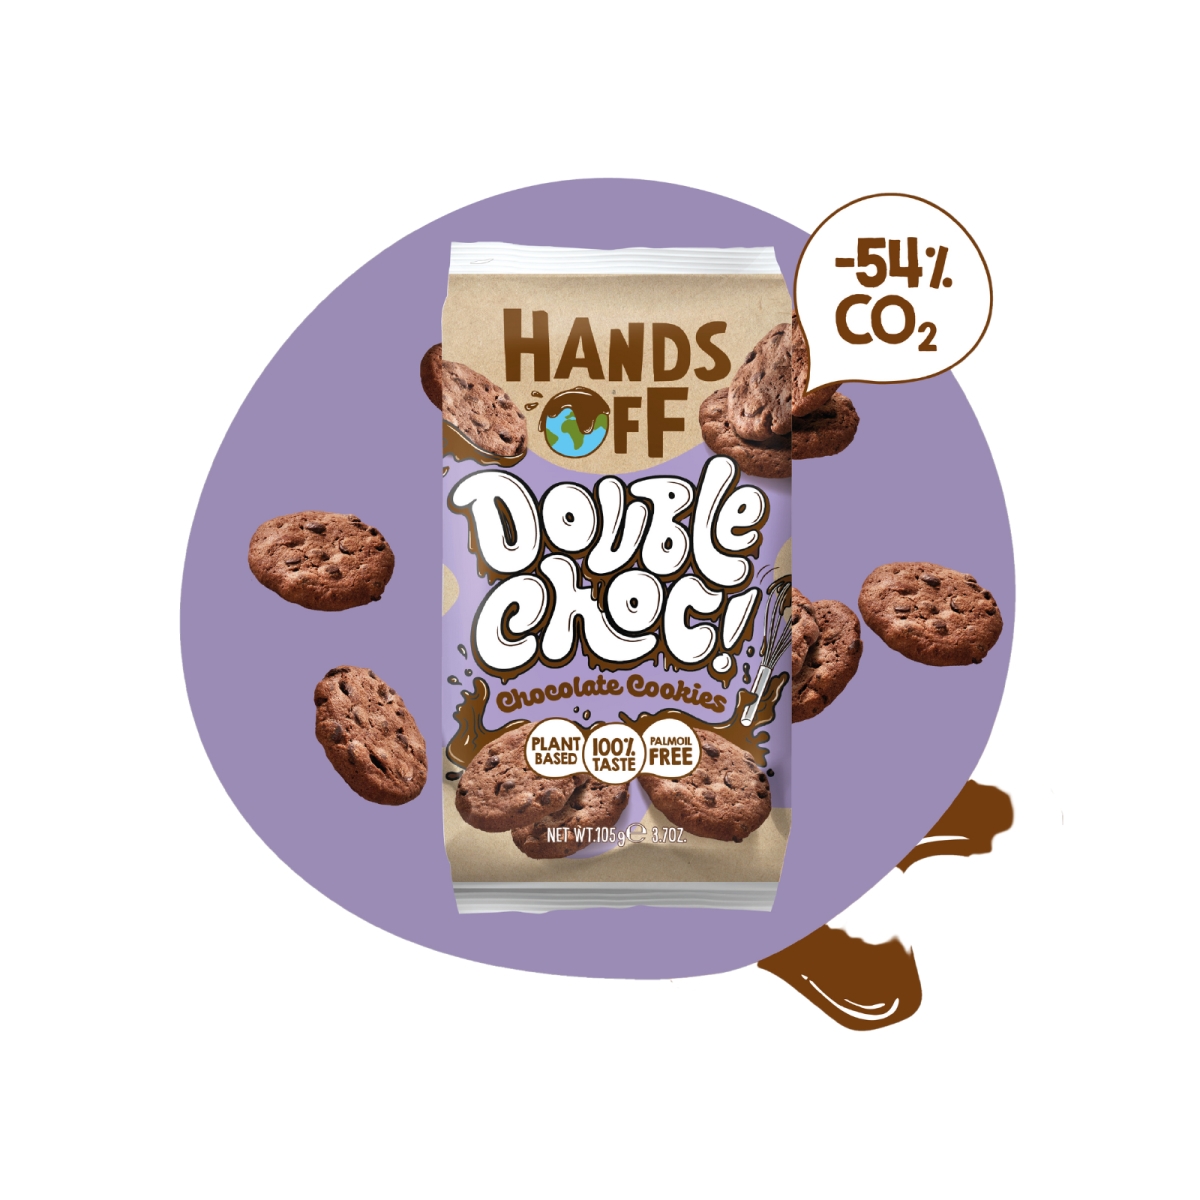 Hands Off Schokokekse Double Choc Cookies 105g